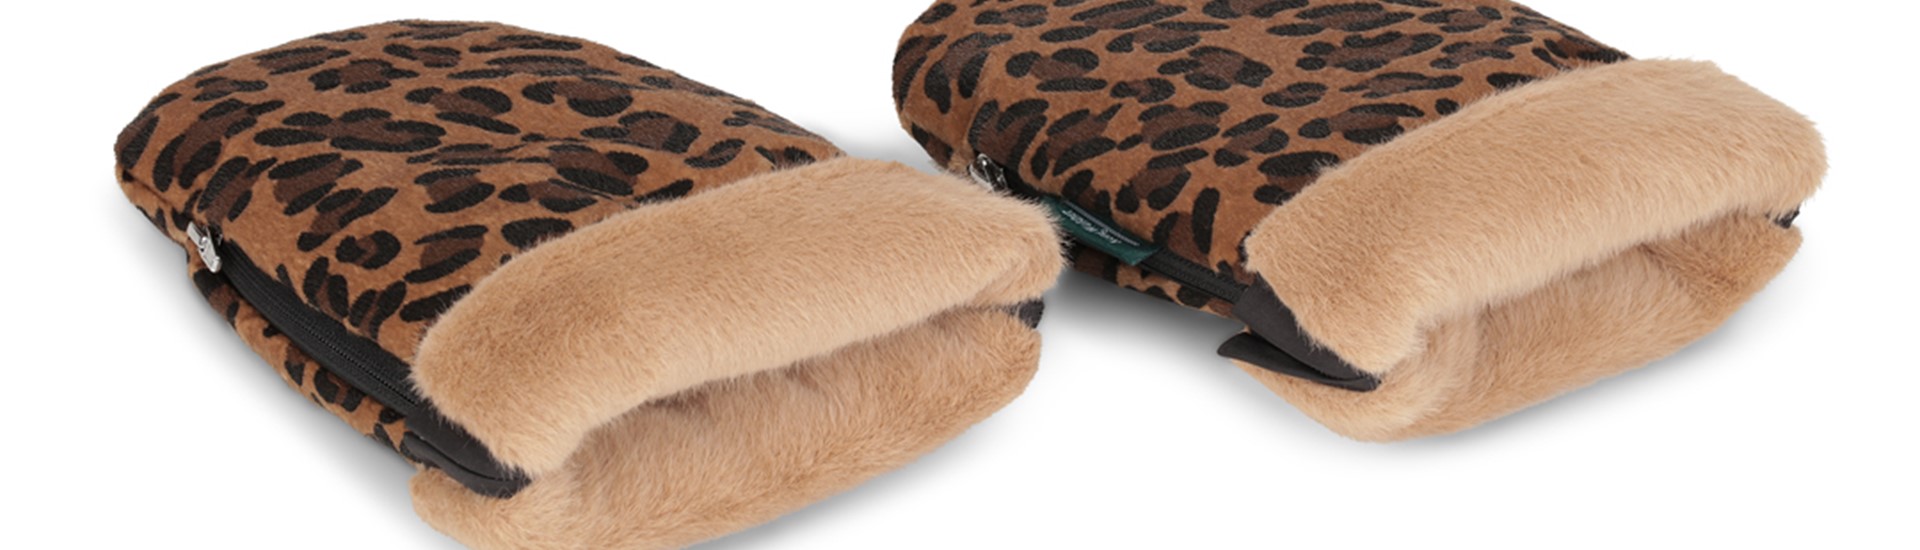 Østerbro handsker i leopard fra KongWalther, kendt fra løvens hule, handsker som sidder fast på styret. Set fra siden.jpg